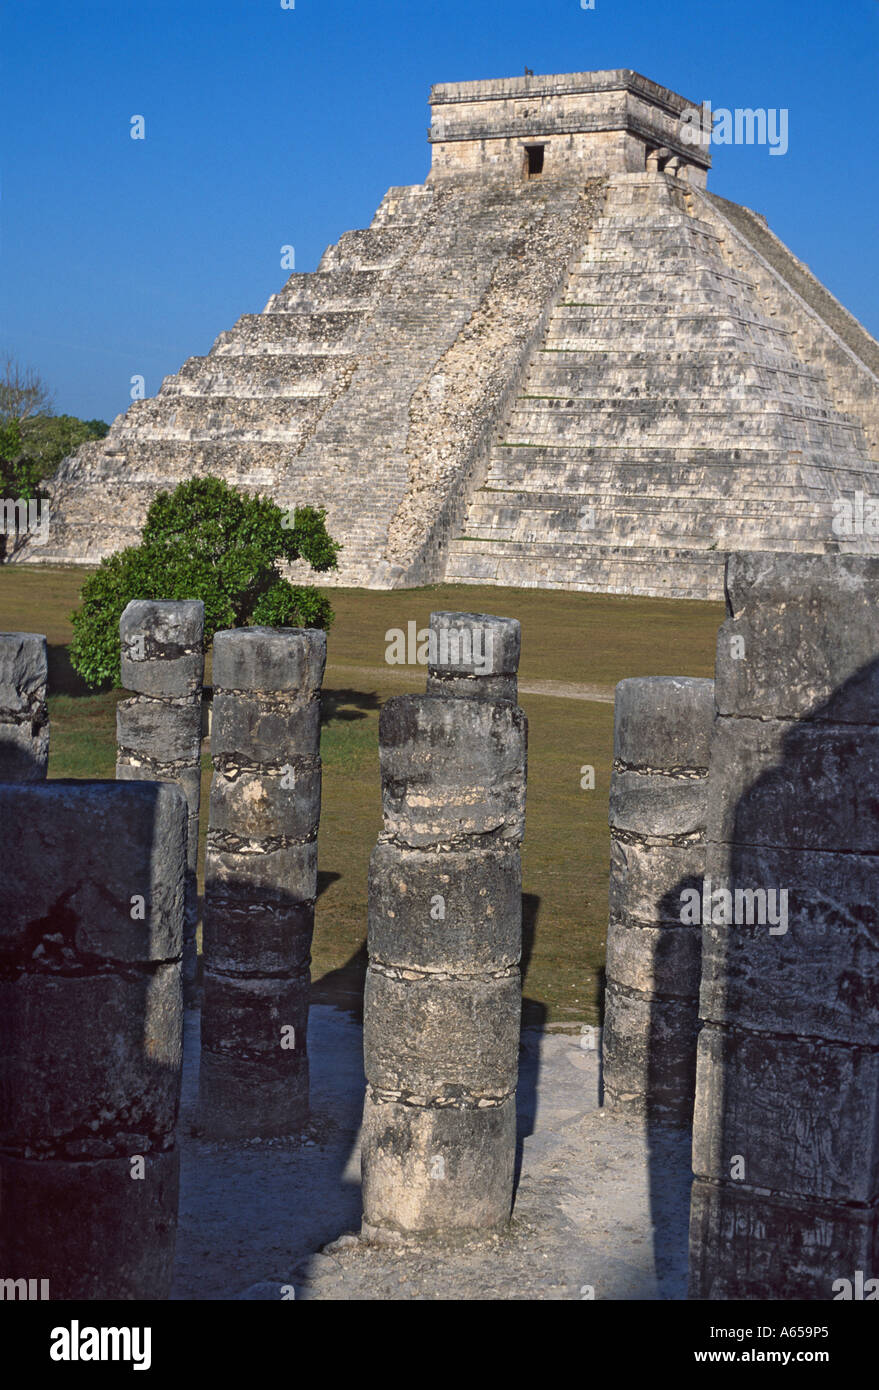 El Castillo, Pyramide des Kukulcan Maya-Tempel in Chichen Itza Yucatan, Mexiko Stockfoto